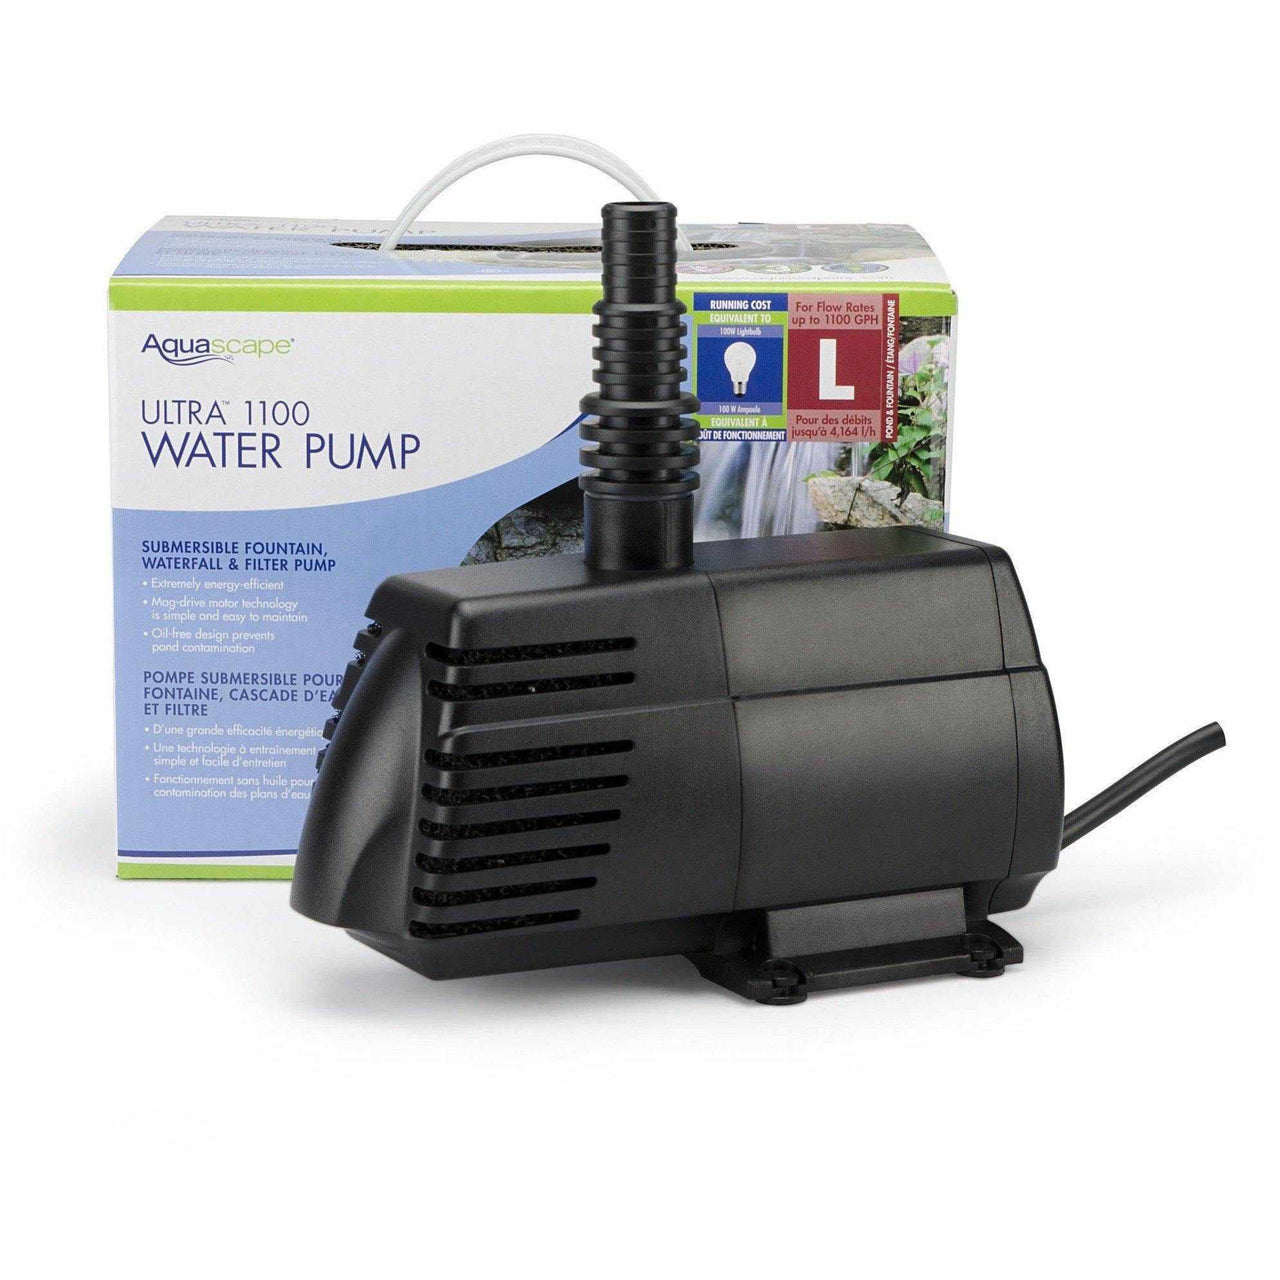 Aquascape Ultra Water Pumps